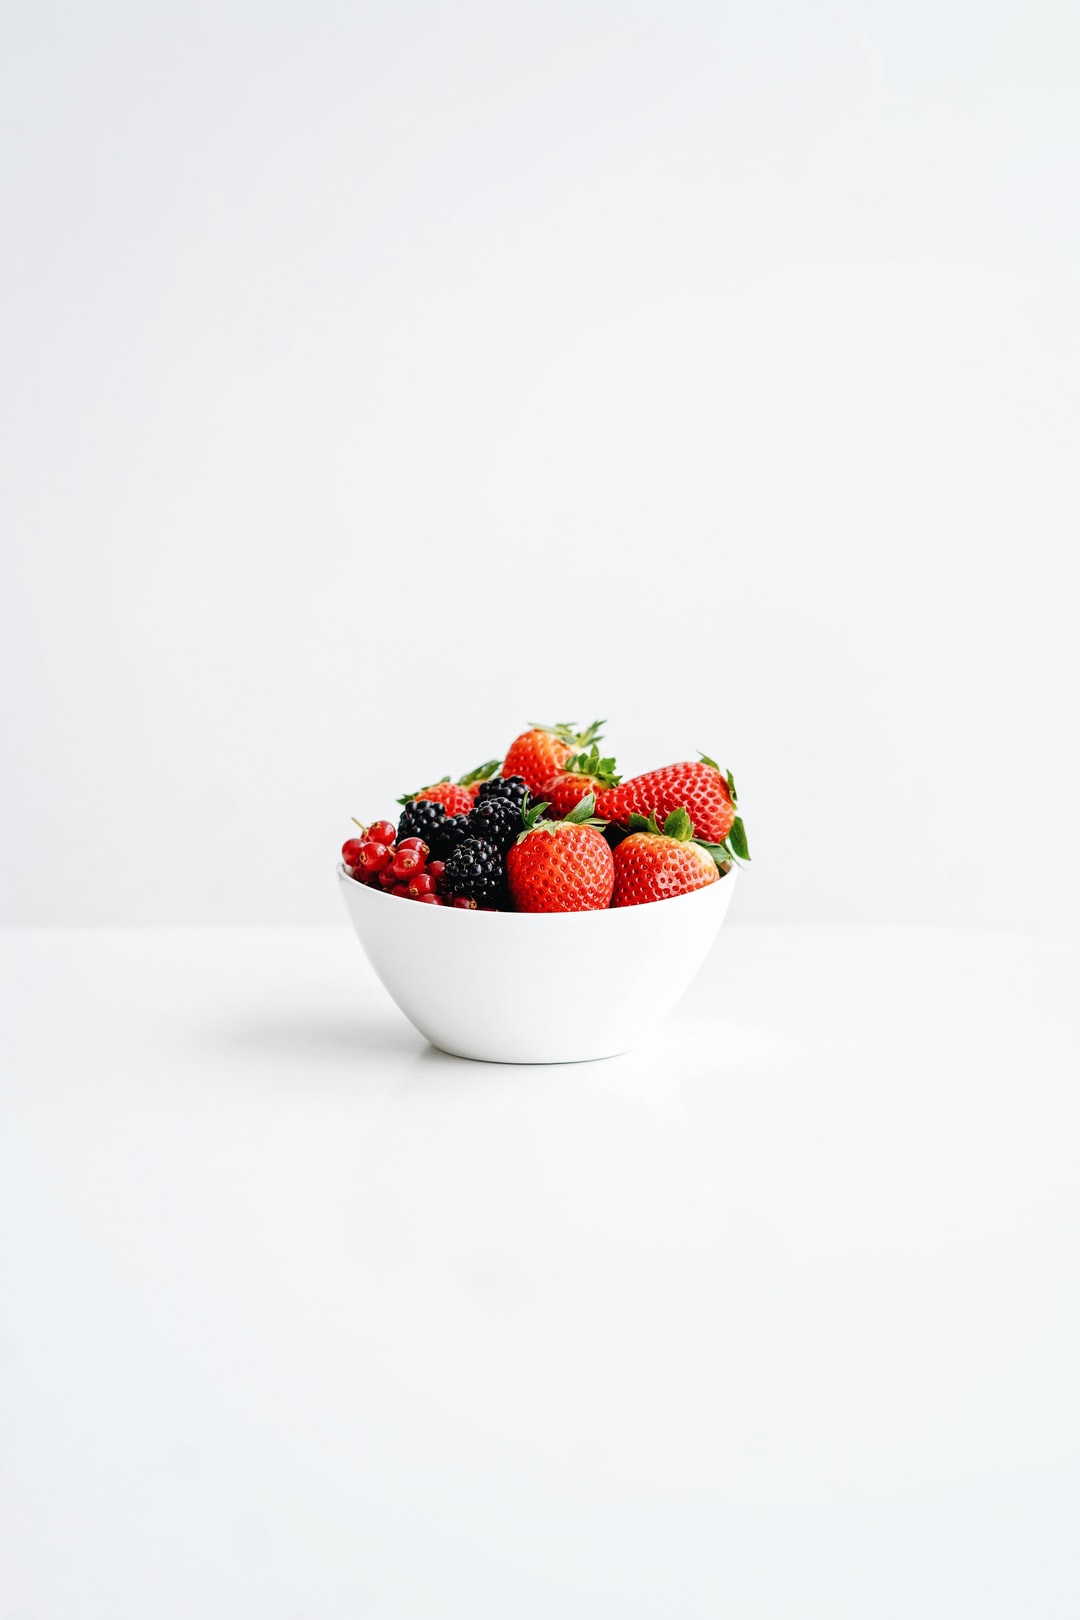 陶瓷碗,草莓,白色